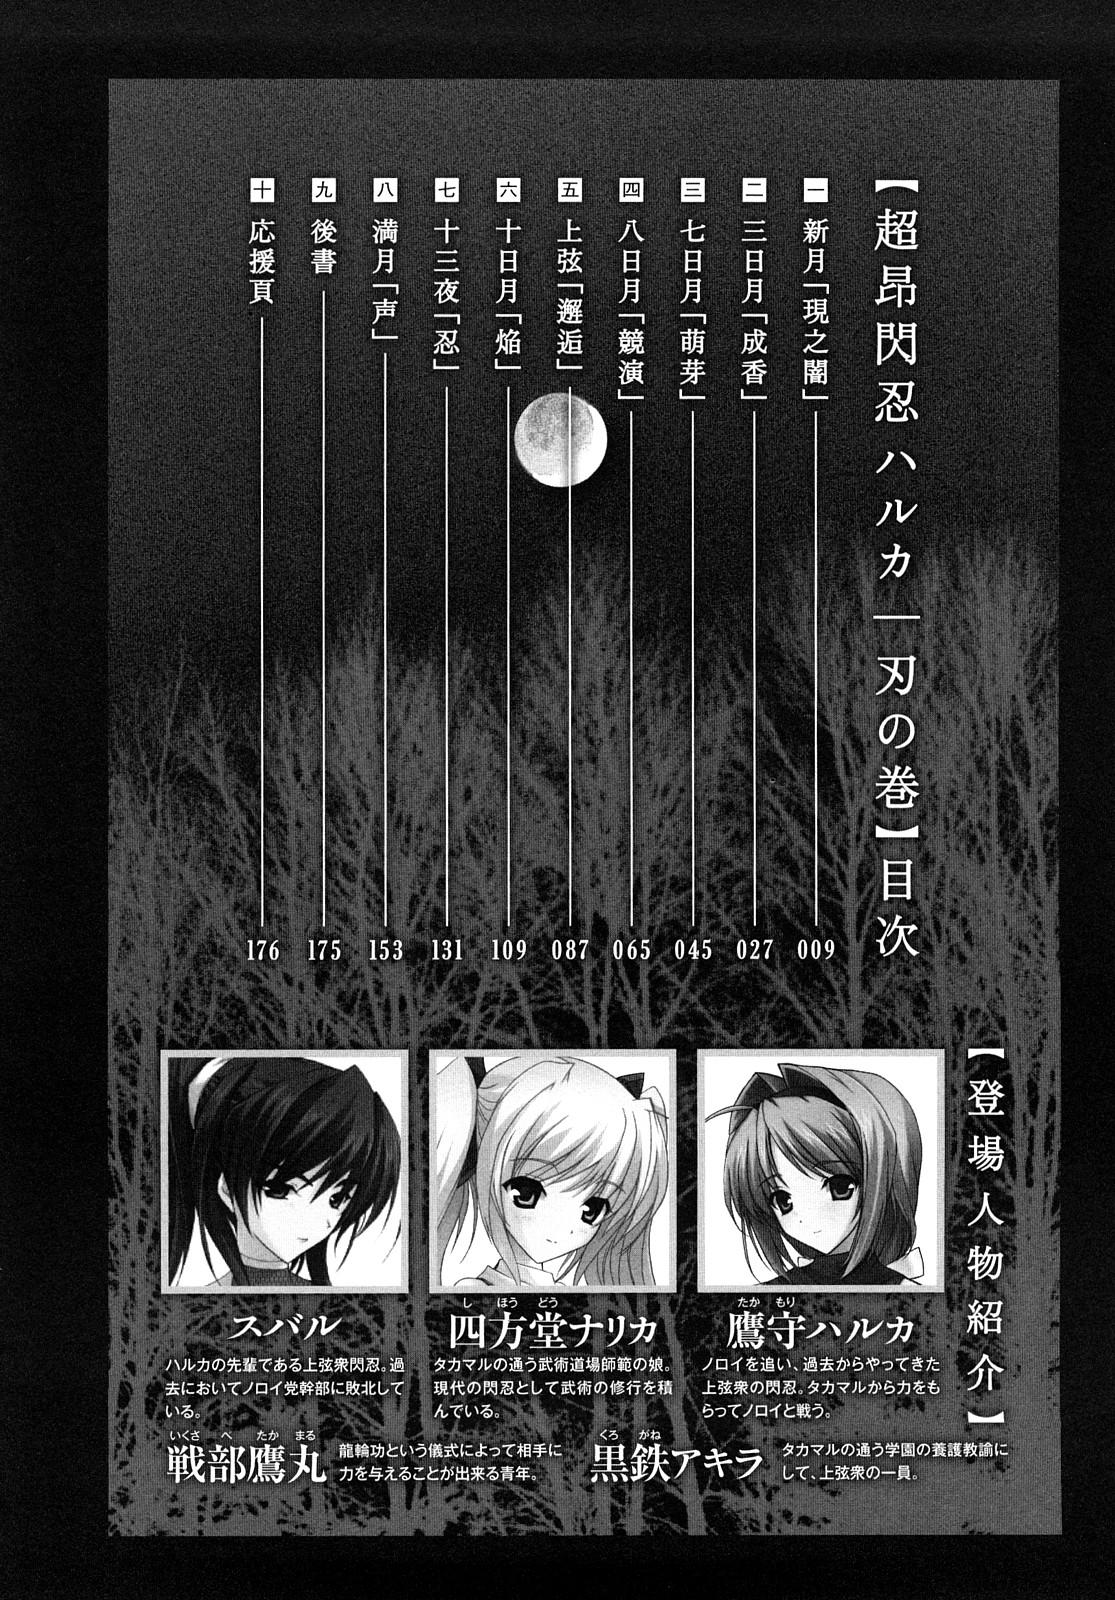 Classroom Choukousennin Haruka: Yaiba no Maki - Beat blades haruka Masturbation - Page 9